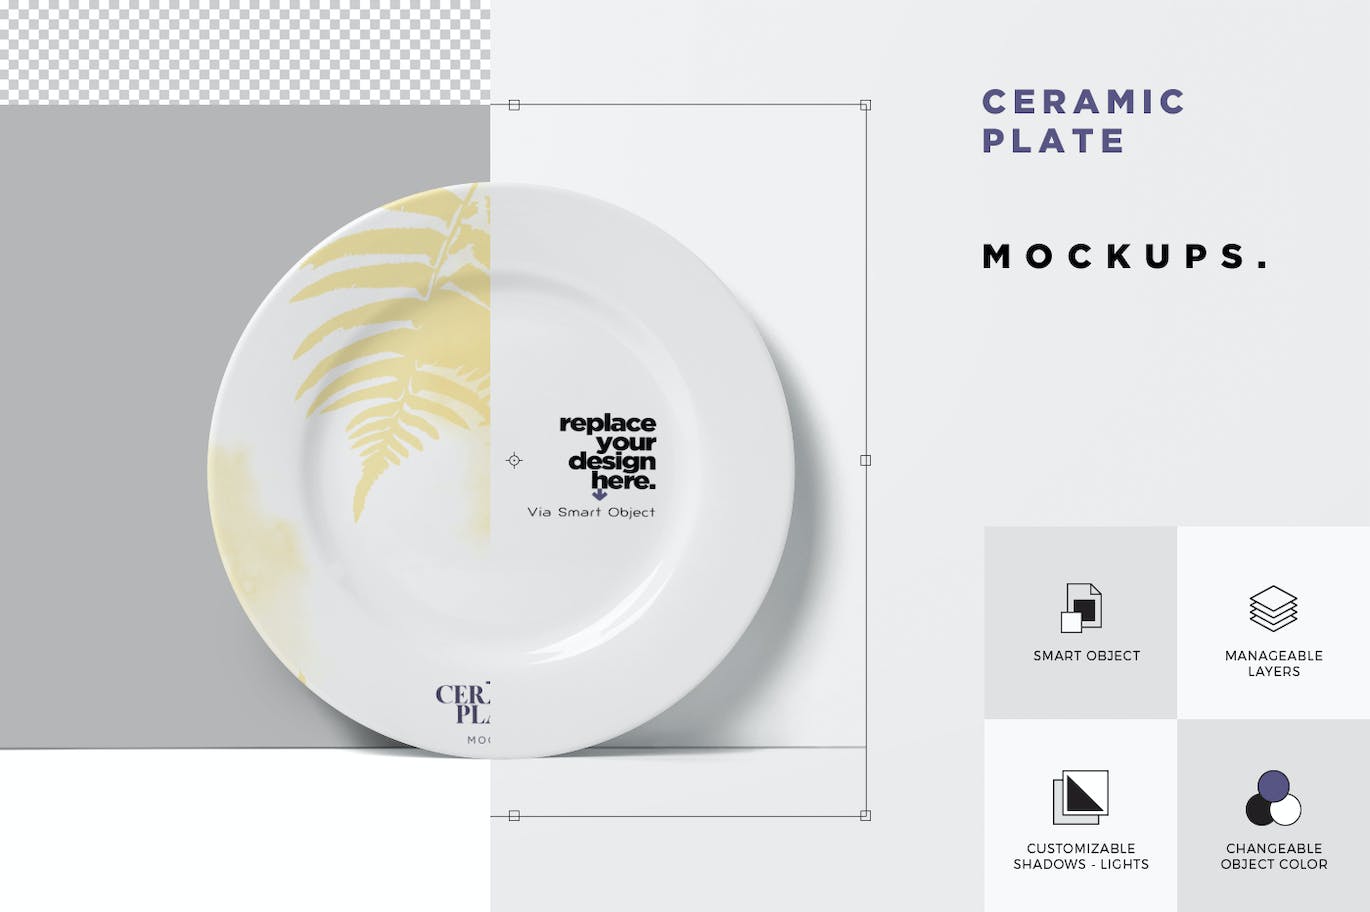 陶瓷盘子陶器品牌设计样机 Ceramic Plate Mockups 样机素材 第4张